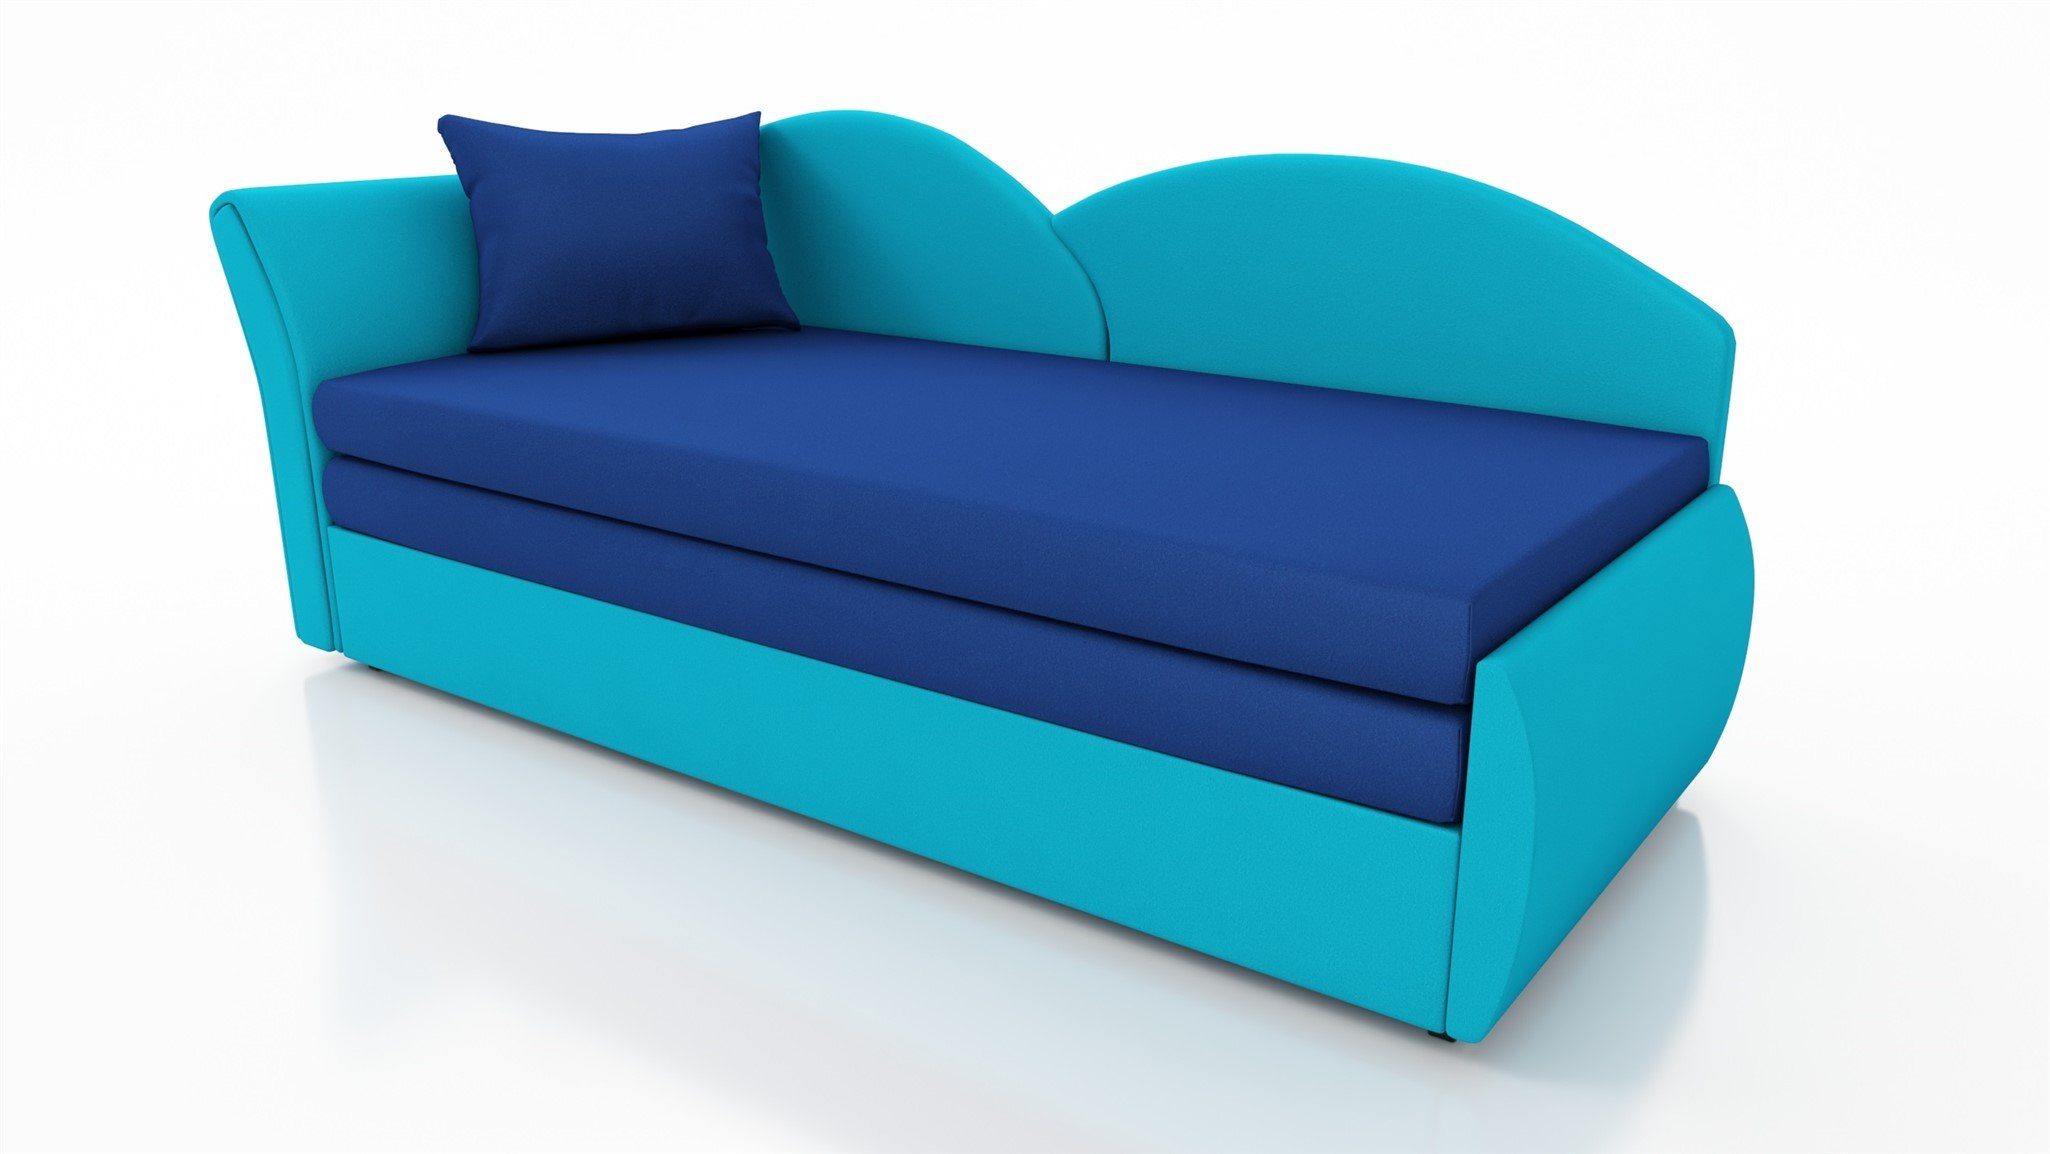 oder Möbel Rechts Bettkasten Schlaffunktion Sofa Alova, inklusive Türkis-Blau Stoff mit Links Schlafsofa Fun ALINA